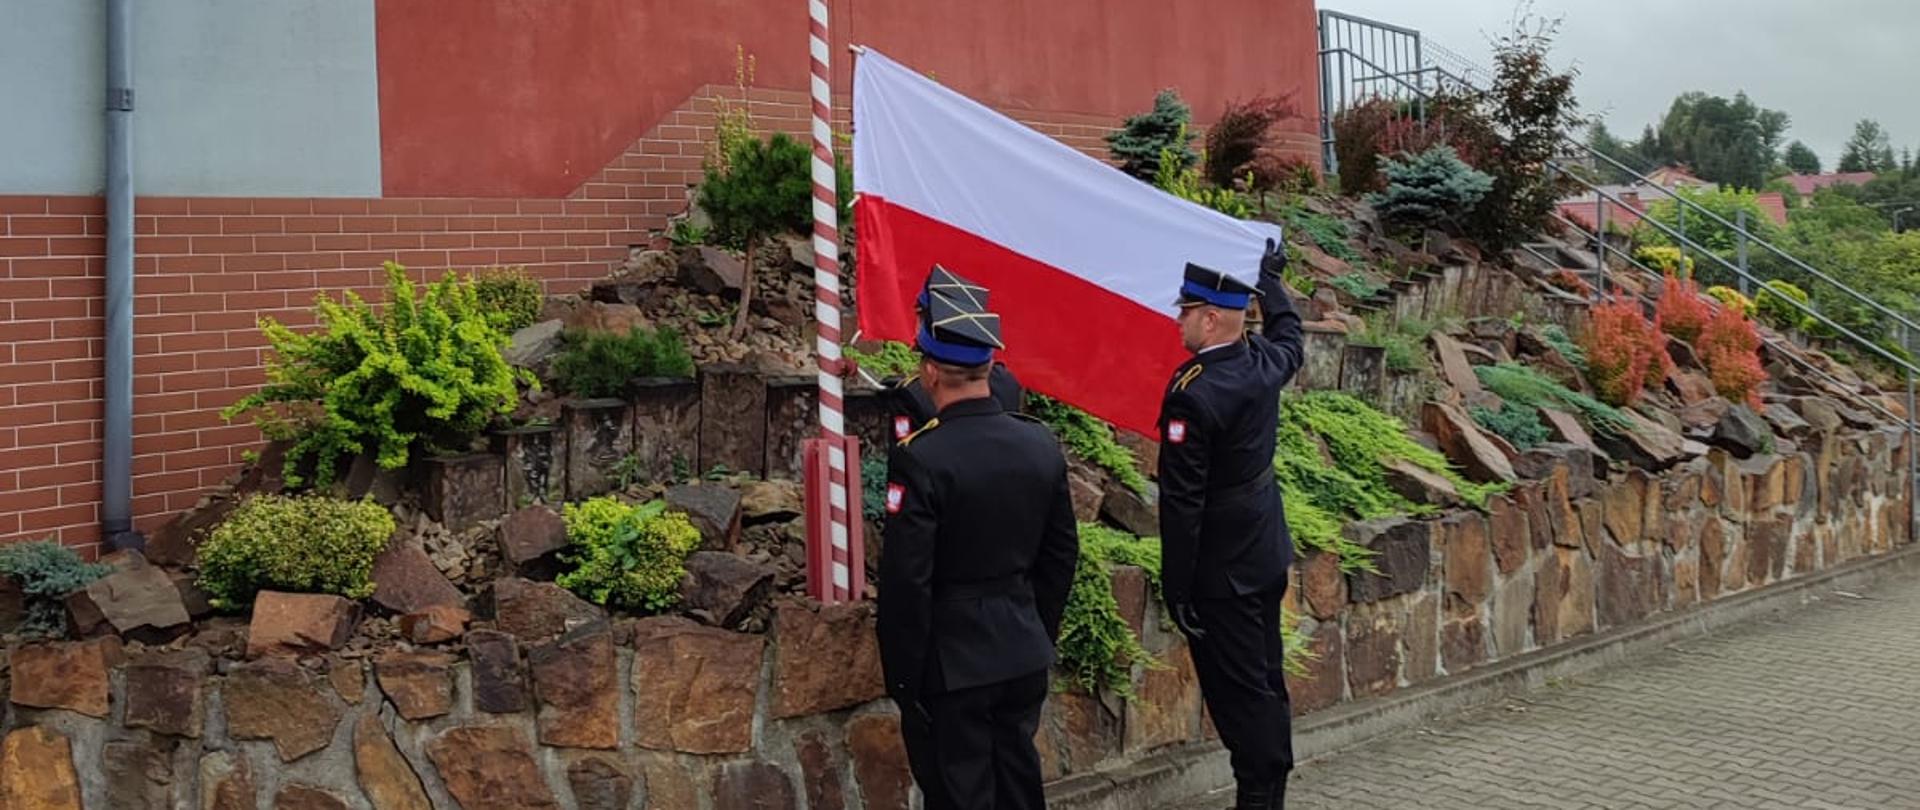 Zdjęcie przedstawia uroczystą zbiórkę z okazji podniesienia flagi państwowej. Na pierwszym planie poczet flagowy podczas podnoszenia flagi.